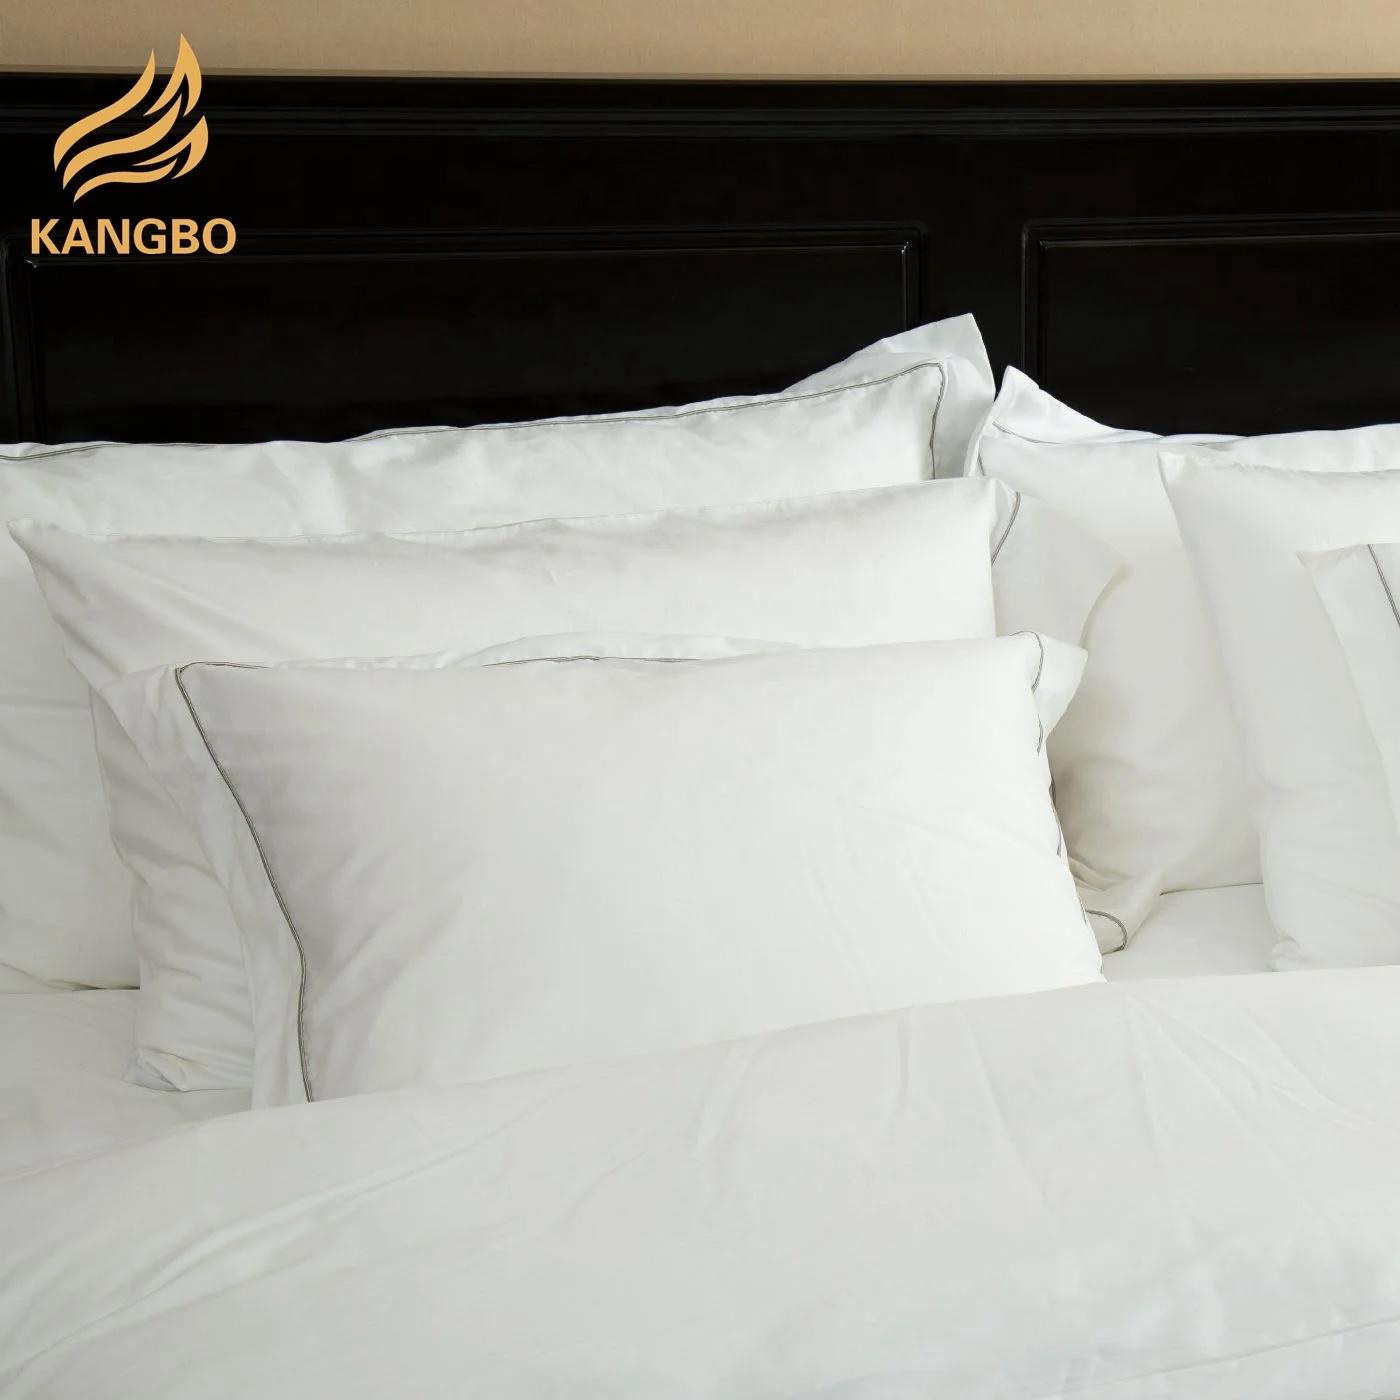 Luxury bed sheet wholesale plain white cotton duvet cover bedding set